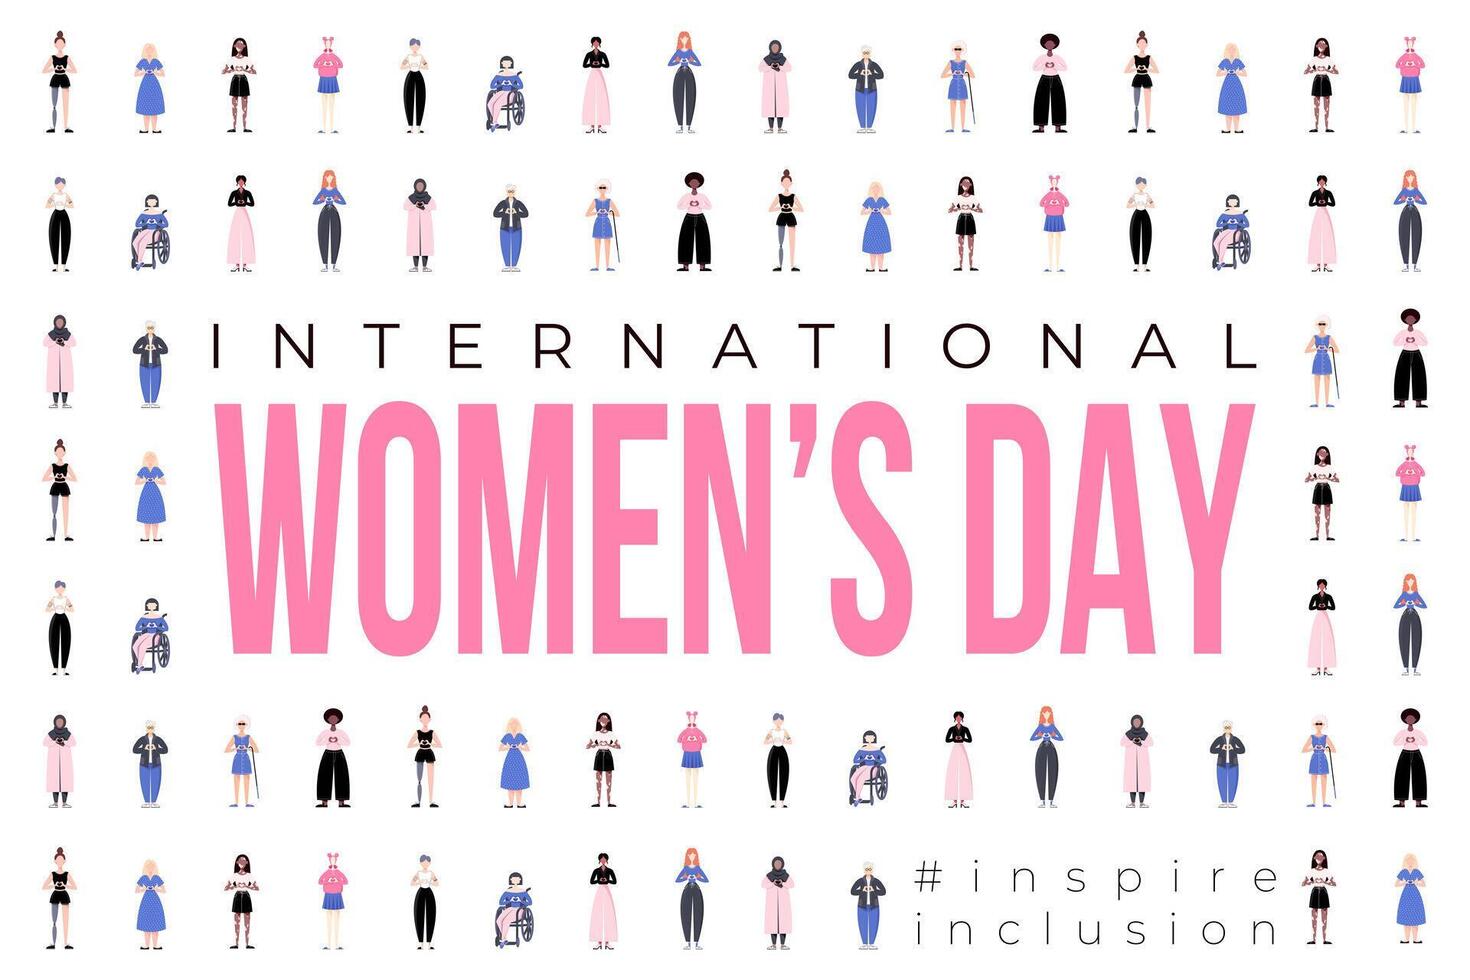 Internationale vrouwen dag banier, achtergrond, poster. inspireren inclusie 2024 campagne. groep van Dames van verschillend etniciteit, leeftijd, lichaam type, haar- kleur vector illustratie in vlak stijl.